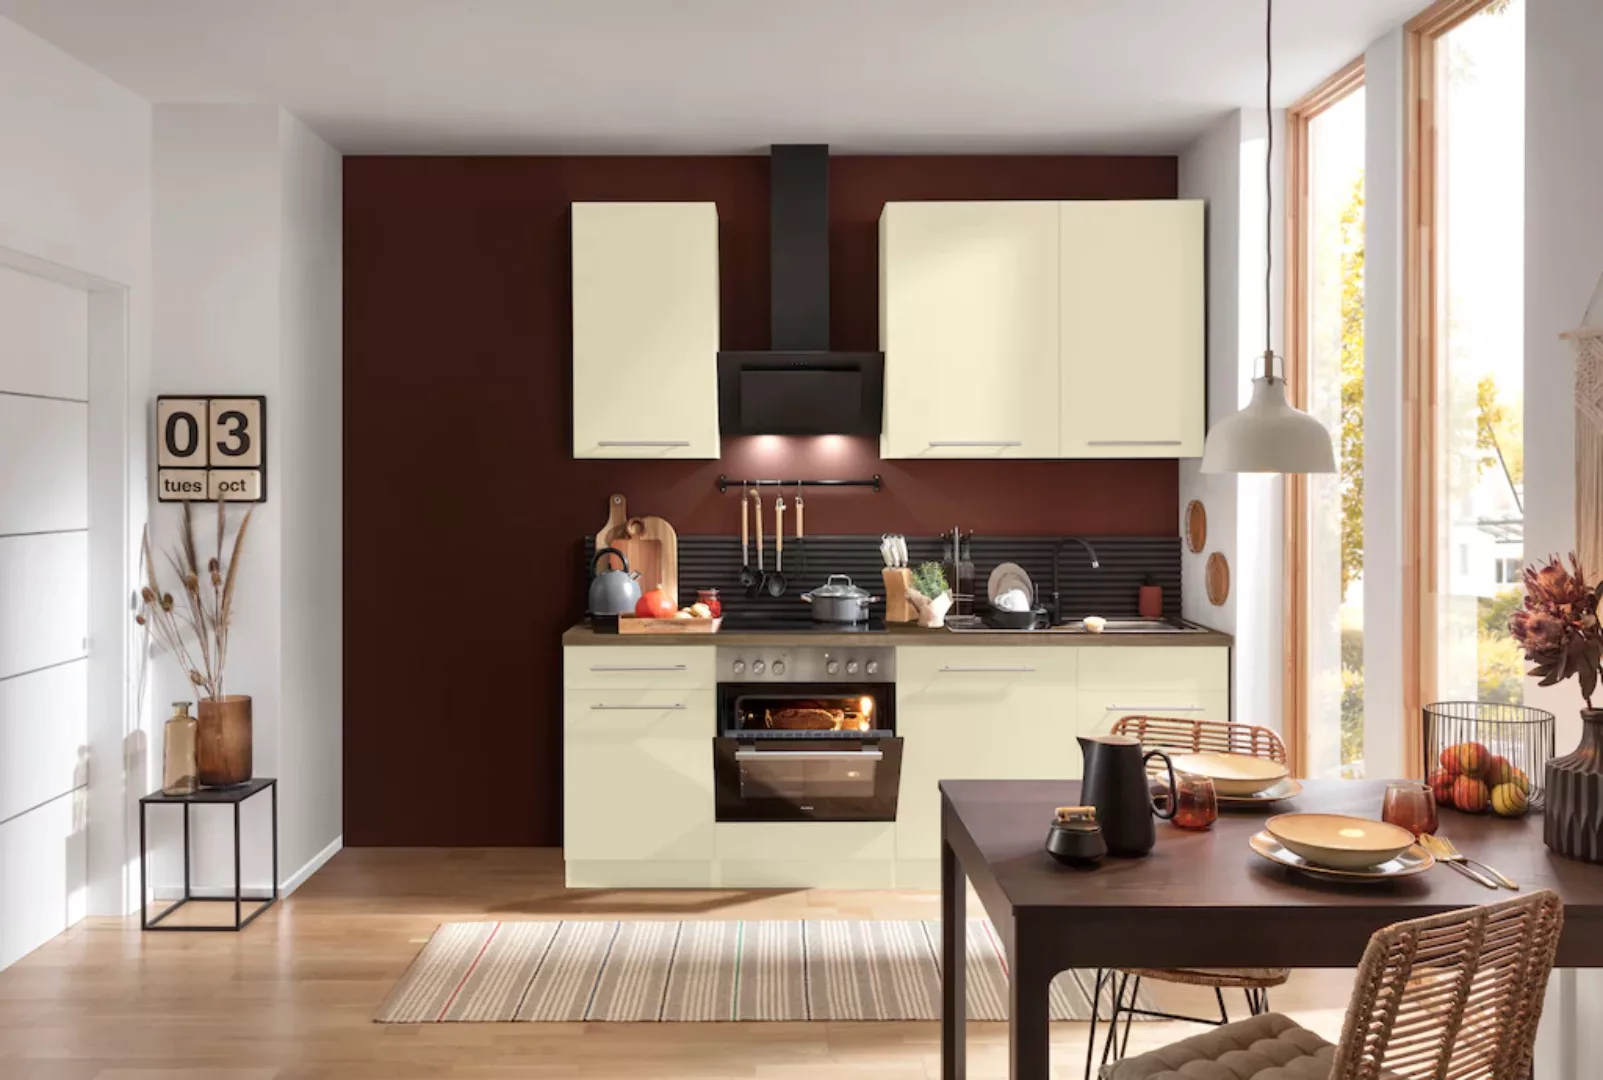 wiho Küchen Küchenzeile "Unna", ohne E-Geräte, Breite 220 cm günstig online kaufen